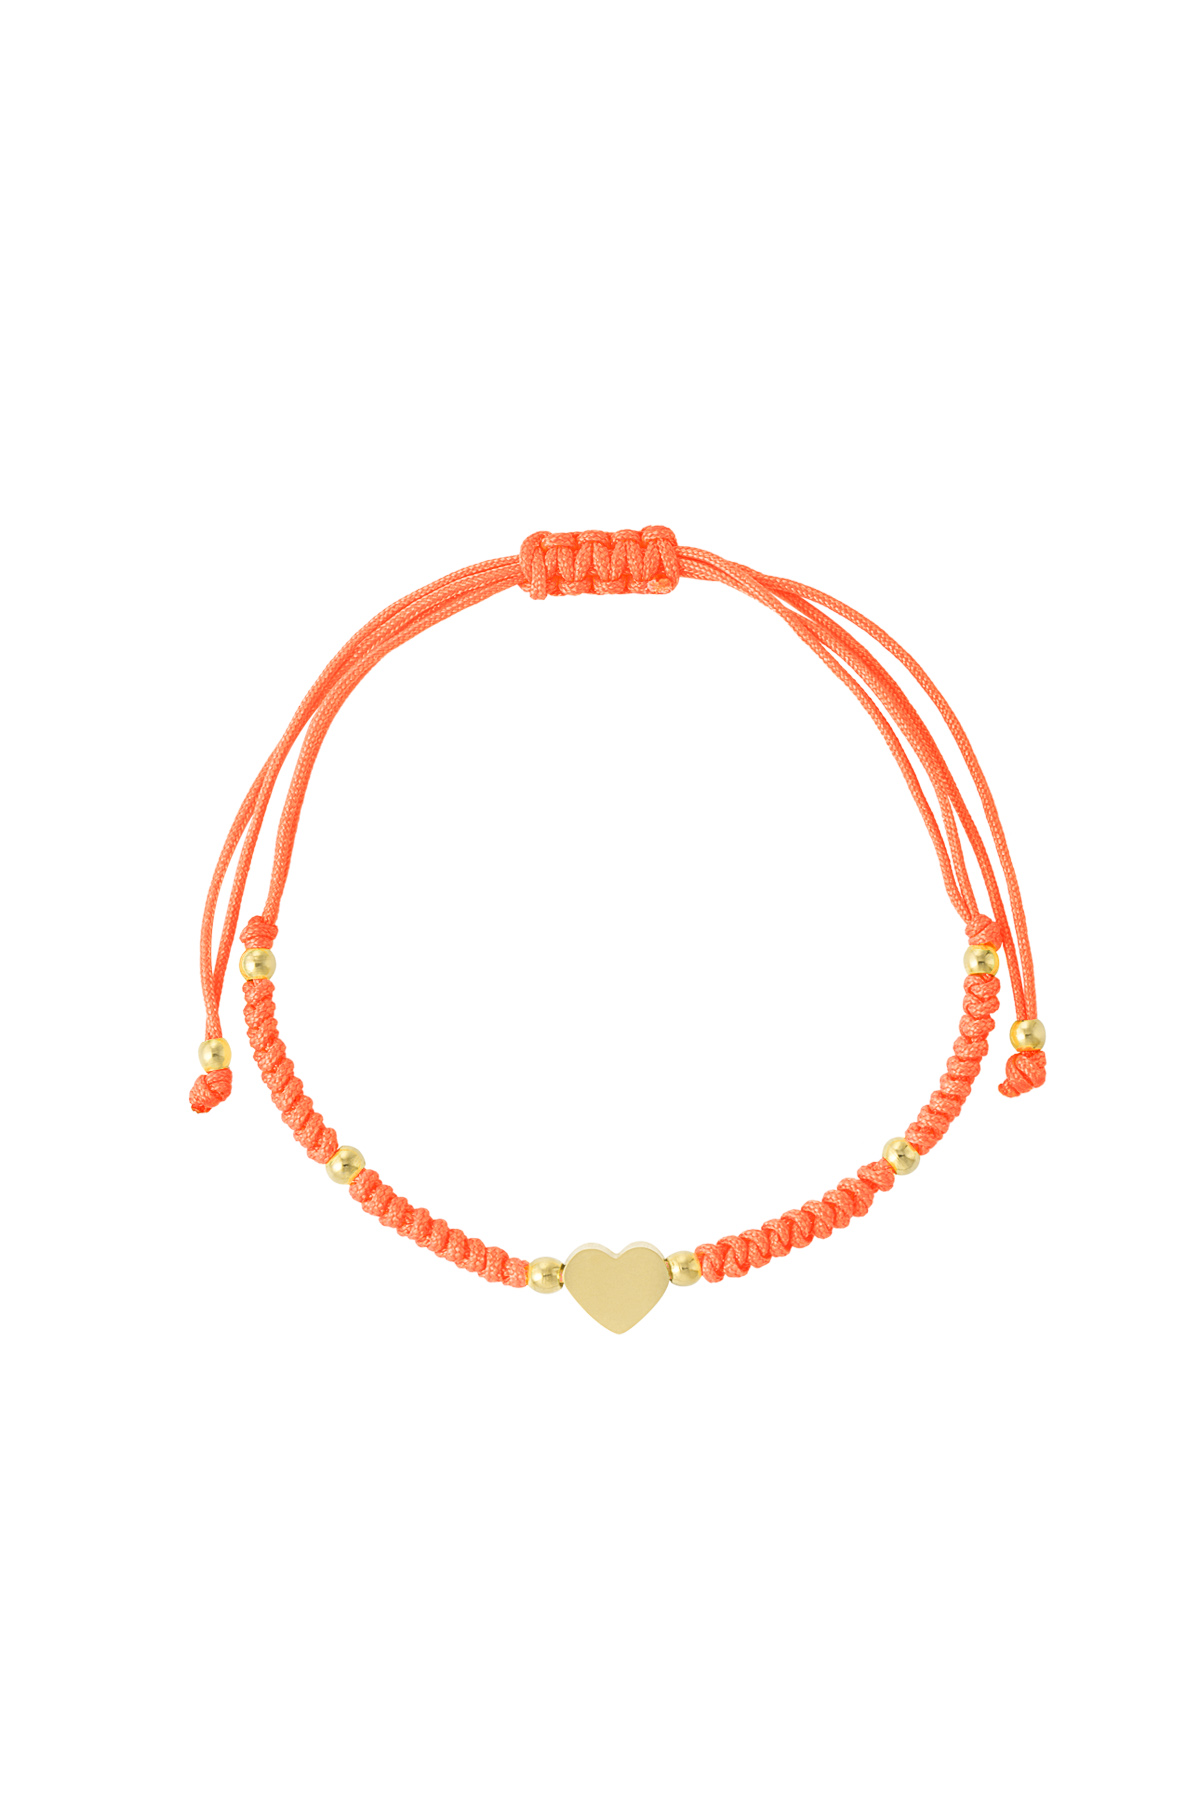 Geflochtenes Armband mit Herz - Orange/Gold  